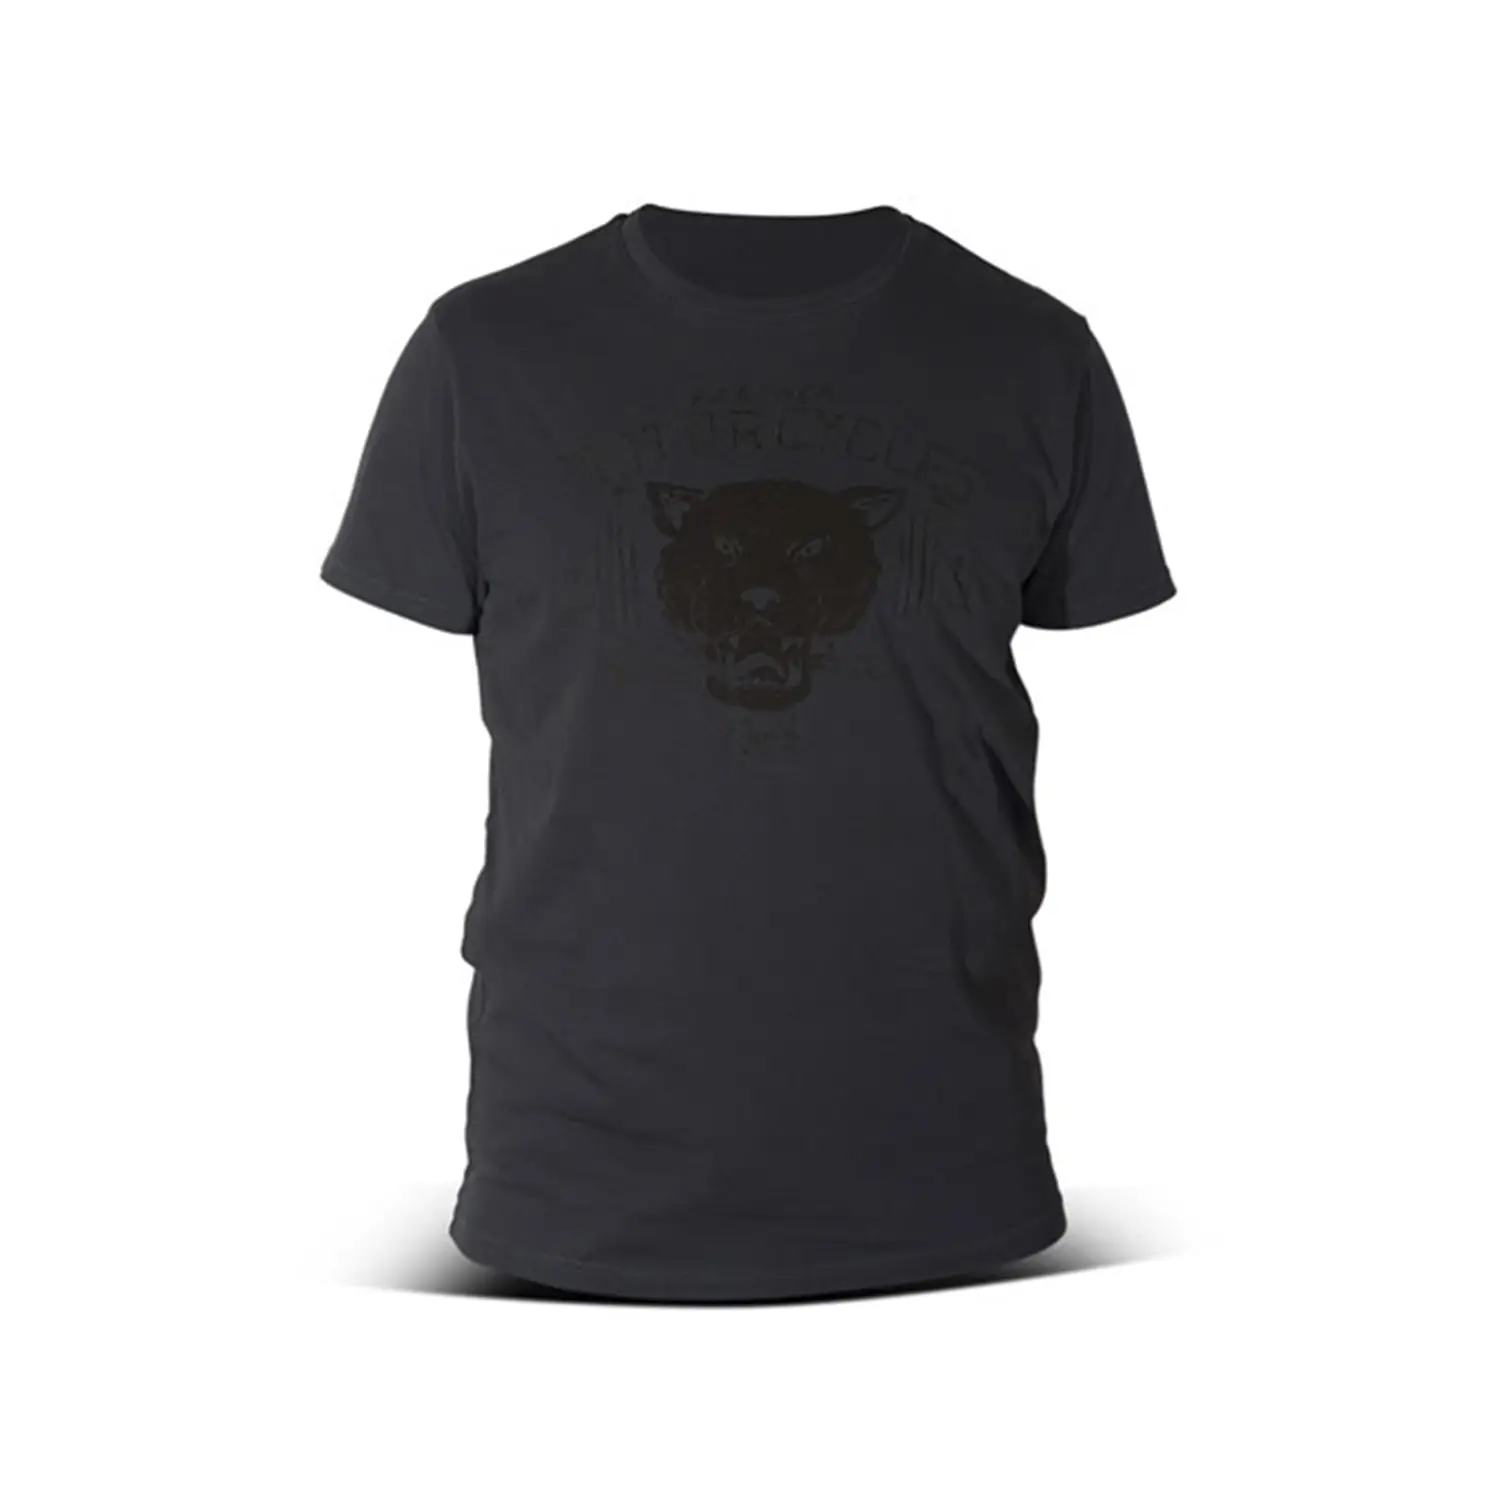 dmd.eu - PANTHER DARK GREY DMD – T-shirt Panther Dark Grey – front